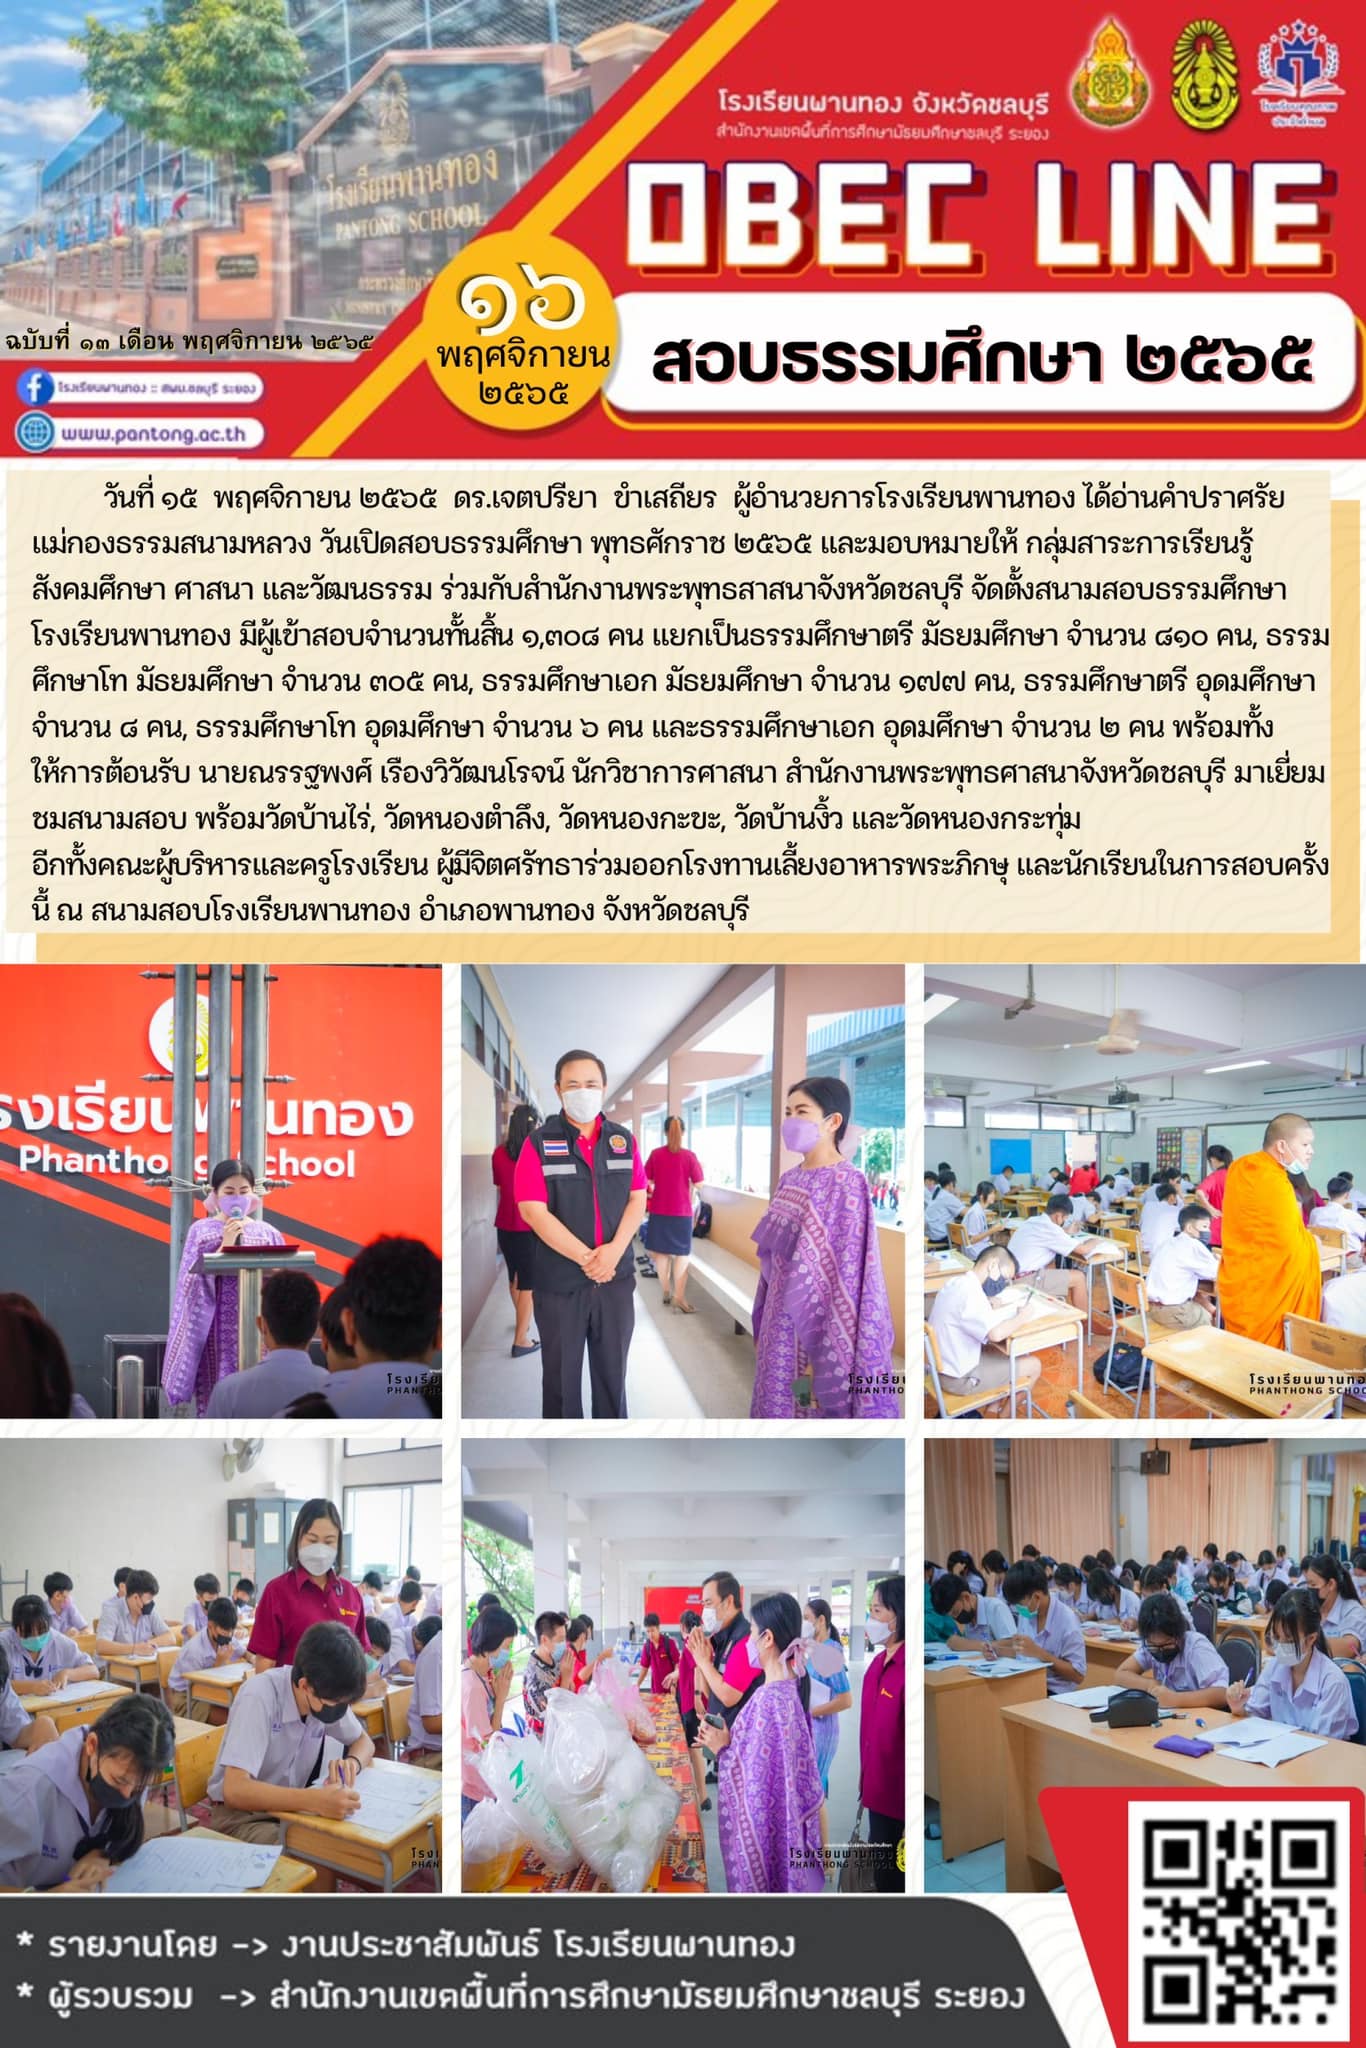 สำนักงานพระพุทธศาสนาชลบุรี เยี่ยมชมสนามสอบธรรมศึกษา โรงเรียนพานทอง